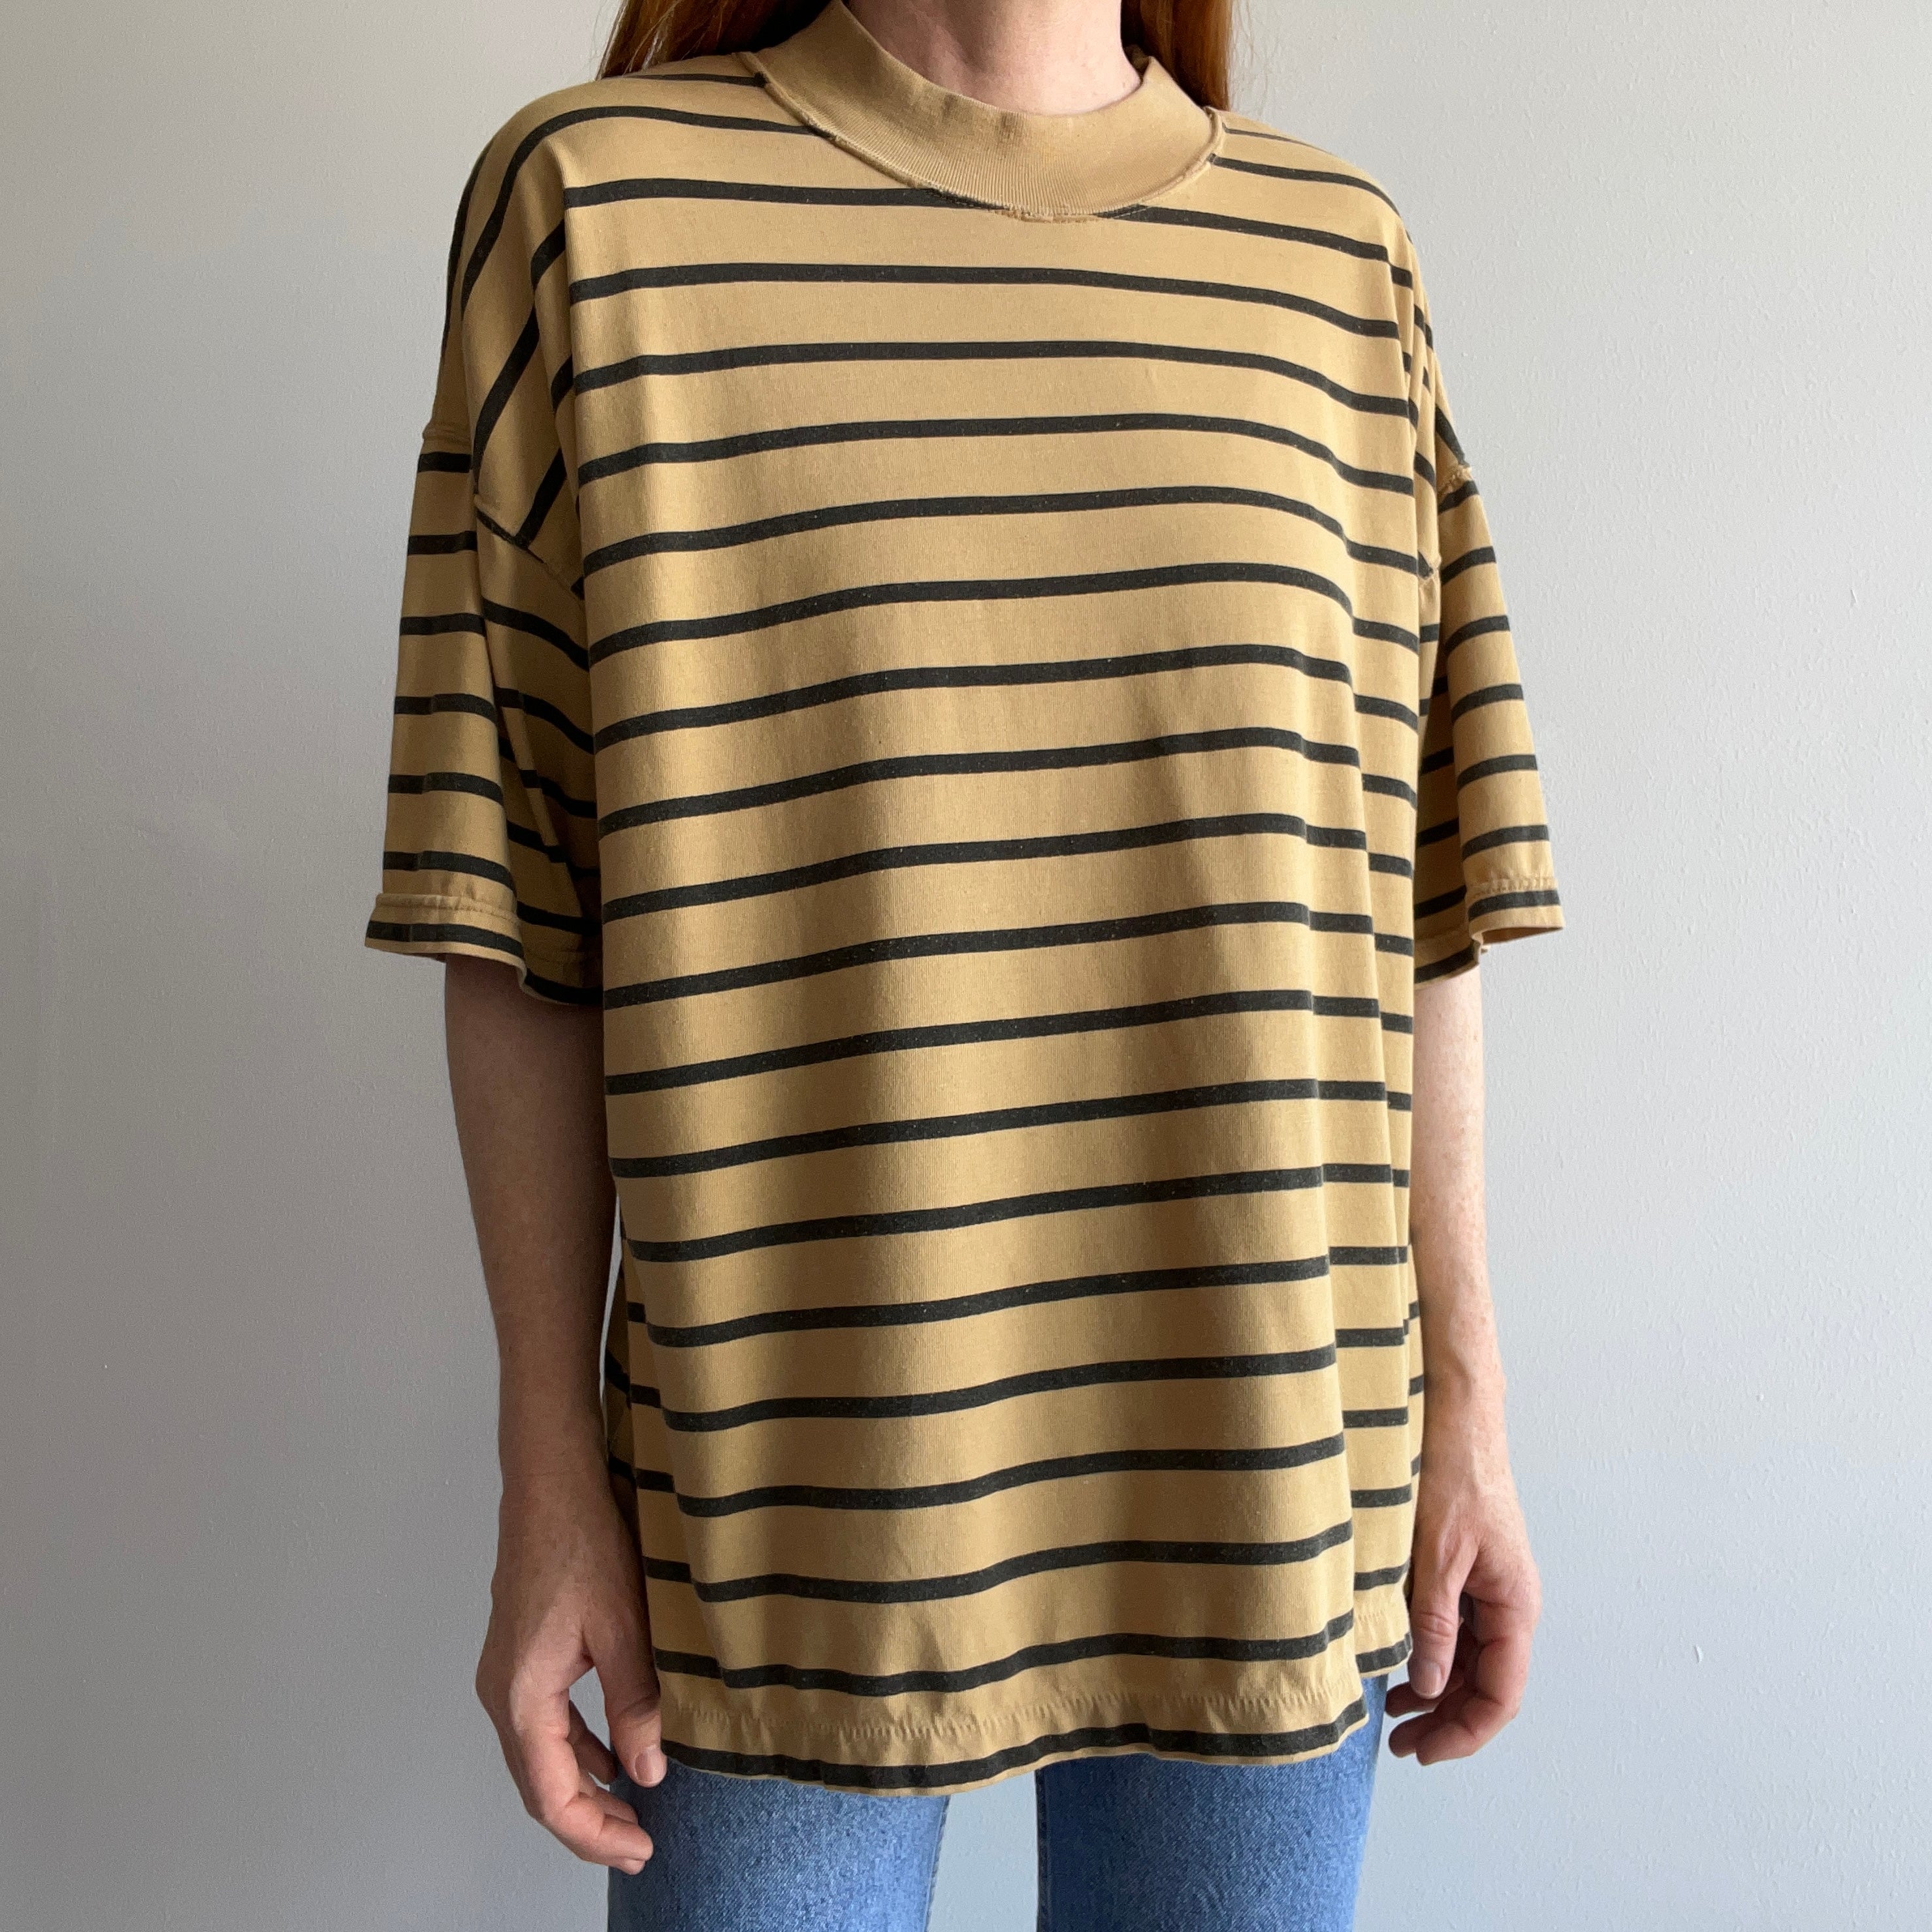 1980s International Sportswear Co Striped Mock Neck T-Shirt